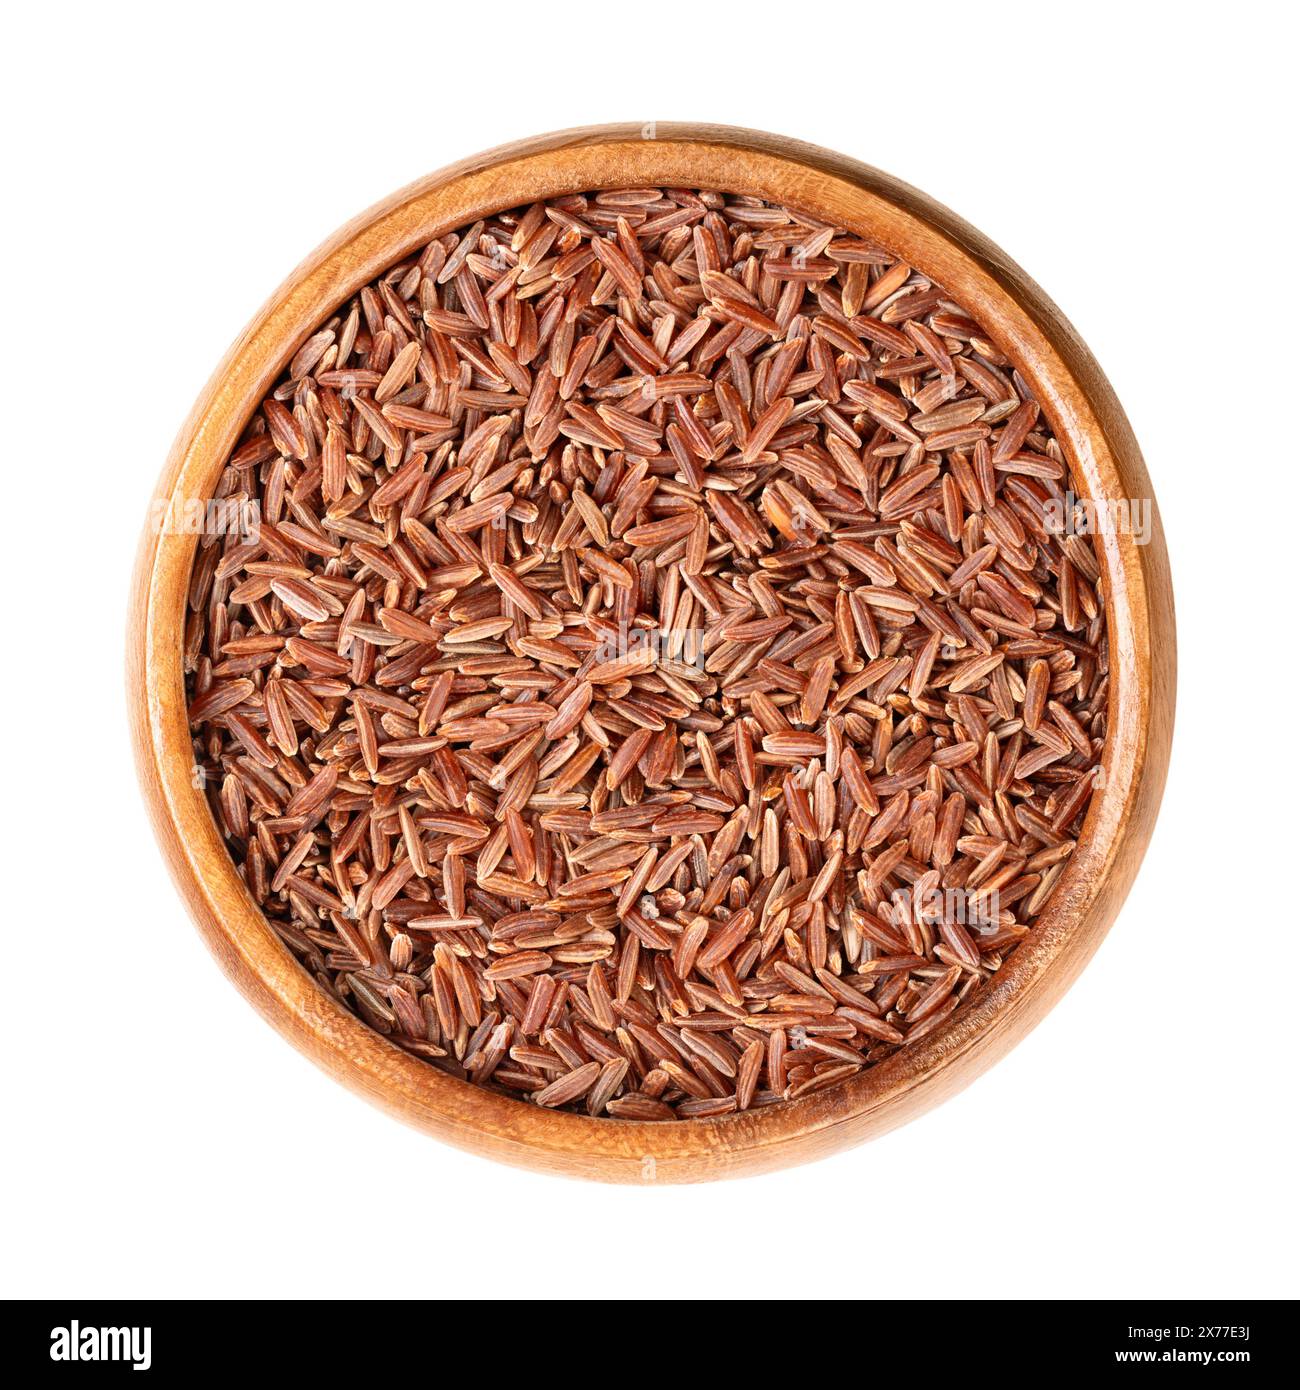 Riso rosso Camargue, in una ciotola di legno. Varietà di riso rosso coltivato nelle zone umide della regione della Camargue nel sud della Francia. Foto Stock